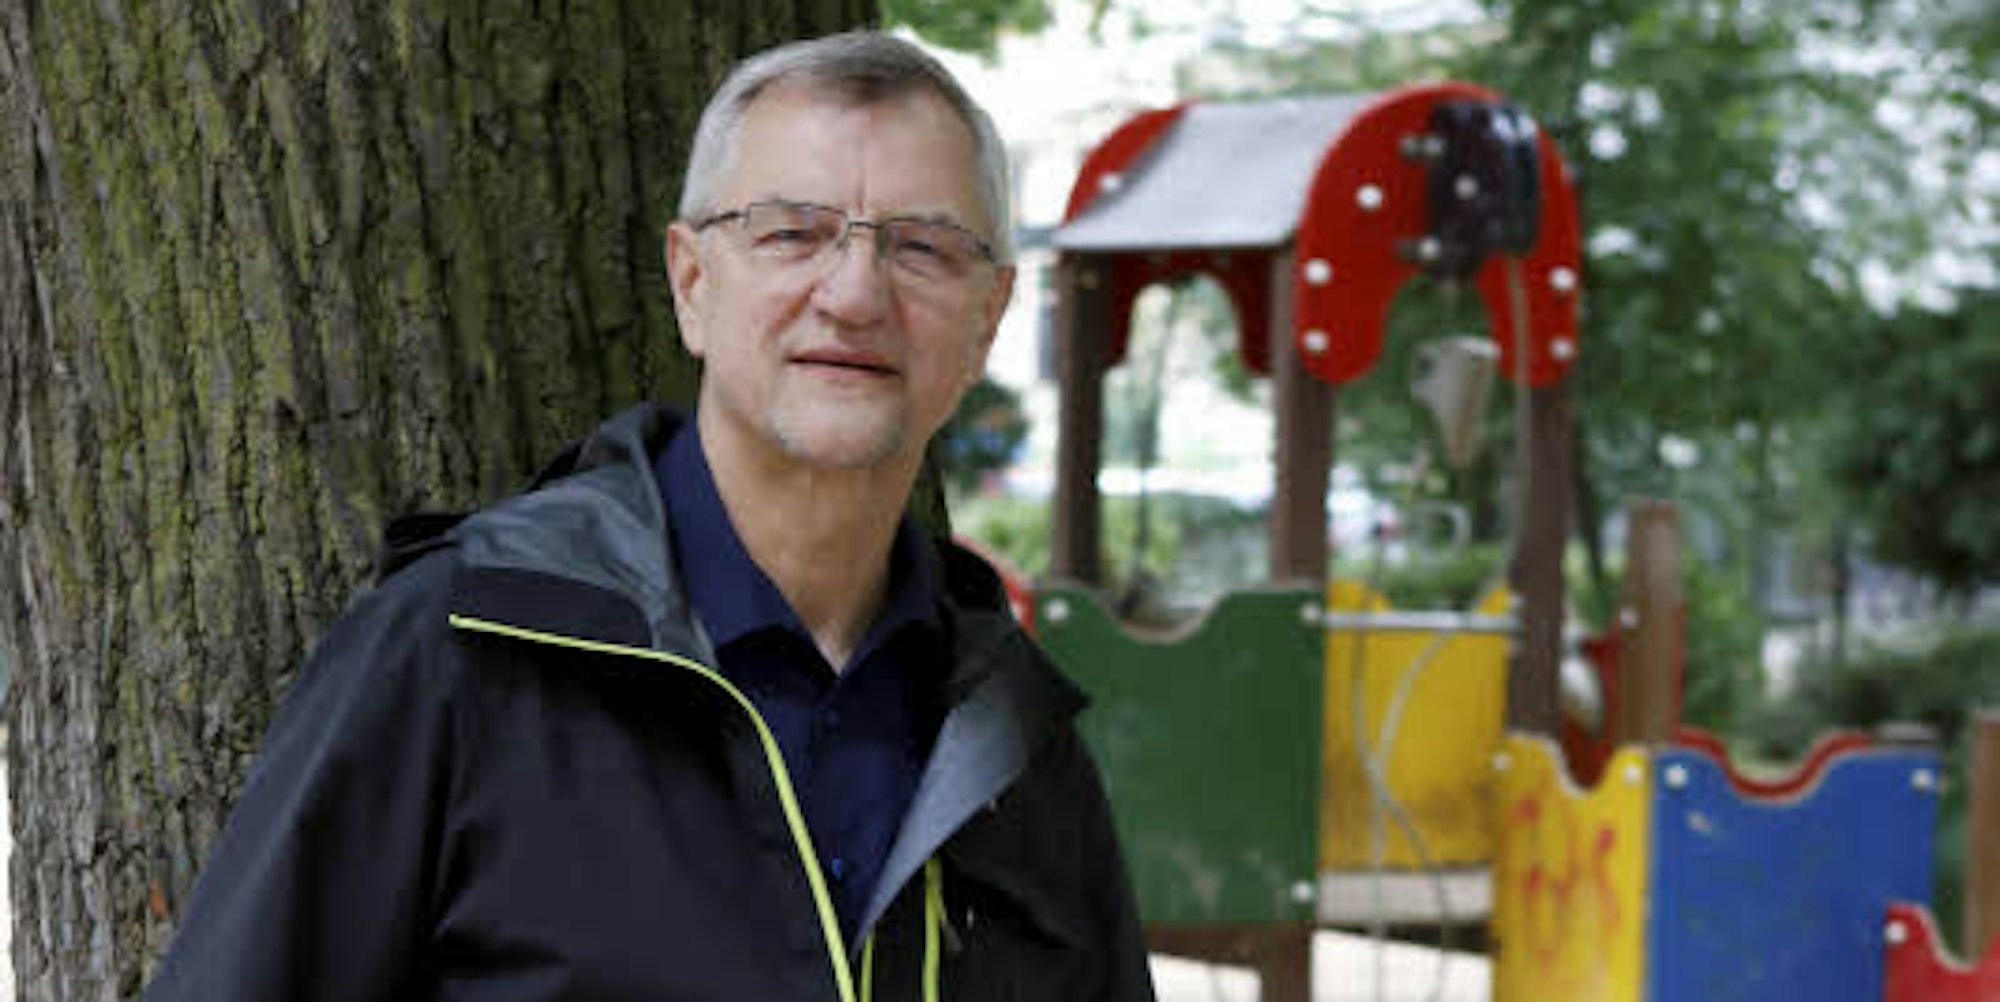 Bezirksbürgermeister Andreas Hupke im Interview.